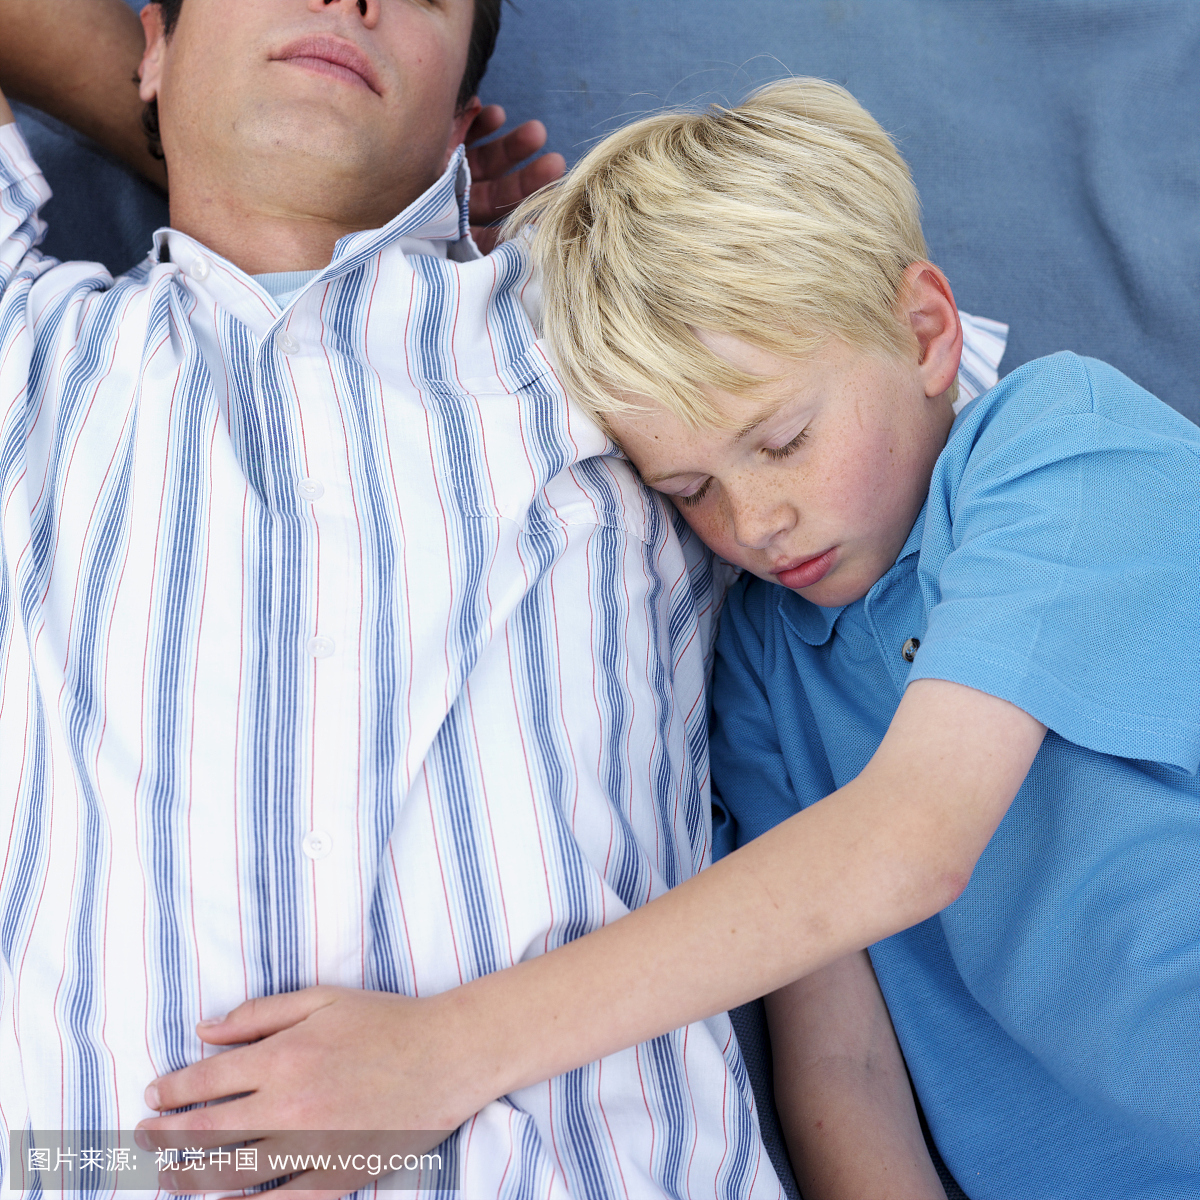 父亲和儿子(11-13)睡在户外,高角度视图,上半身